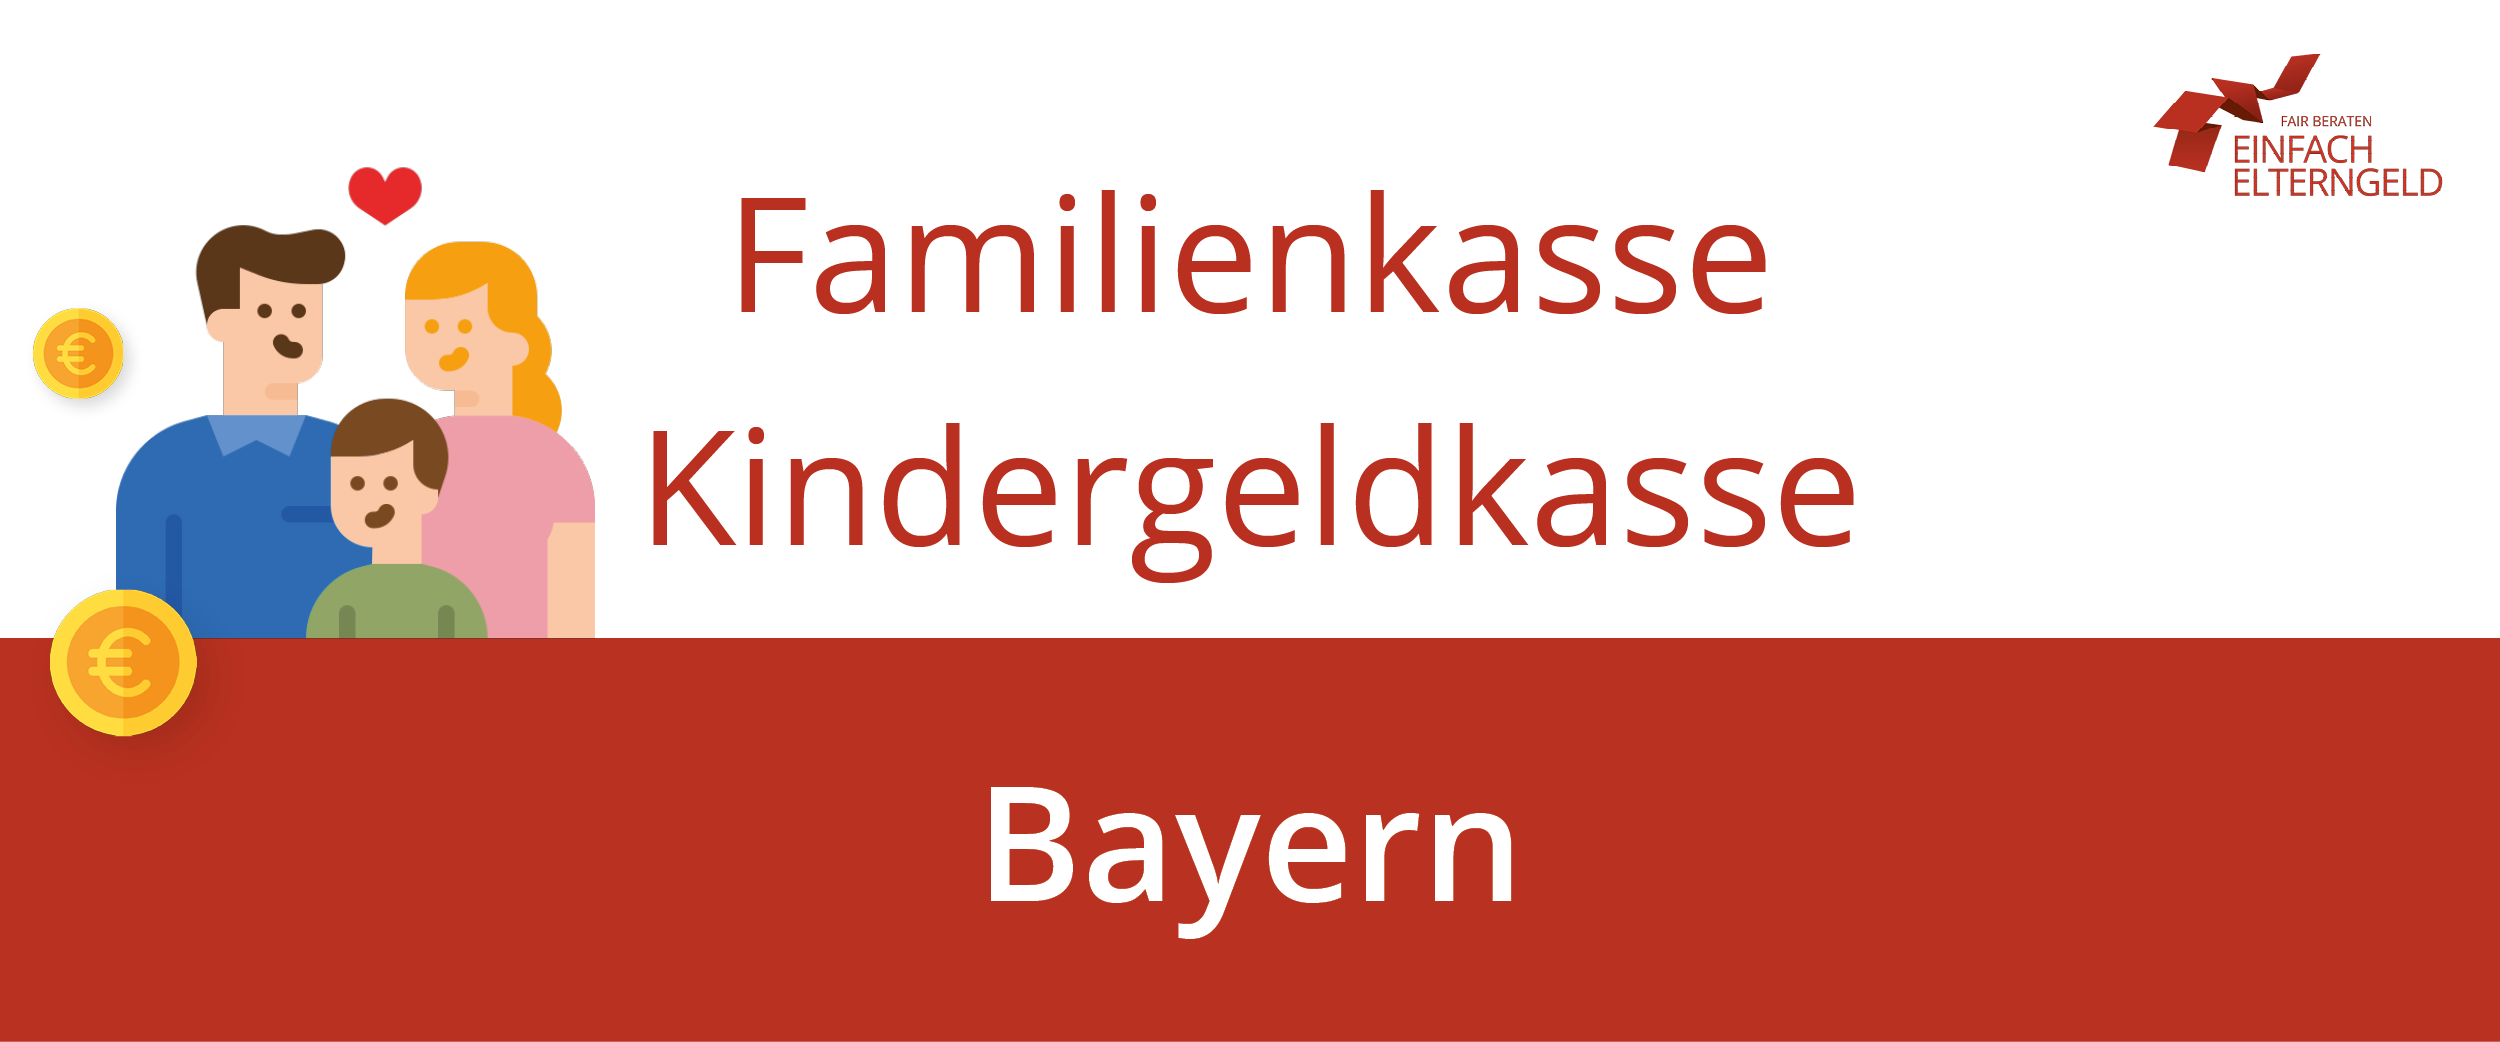 Wir stellen Ihnen die Familienkasse Bayern vor.